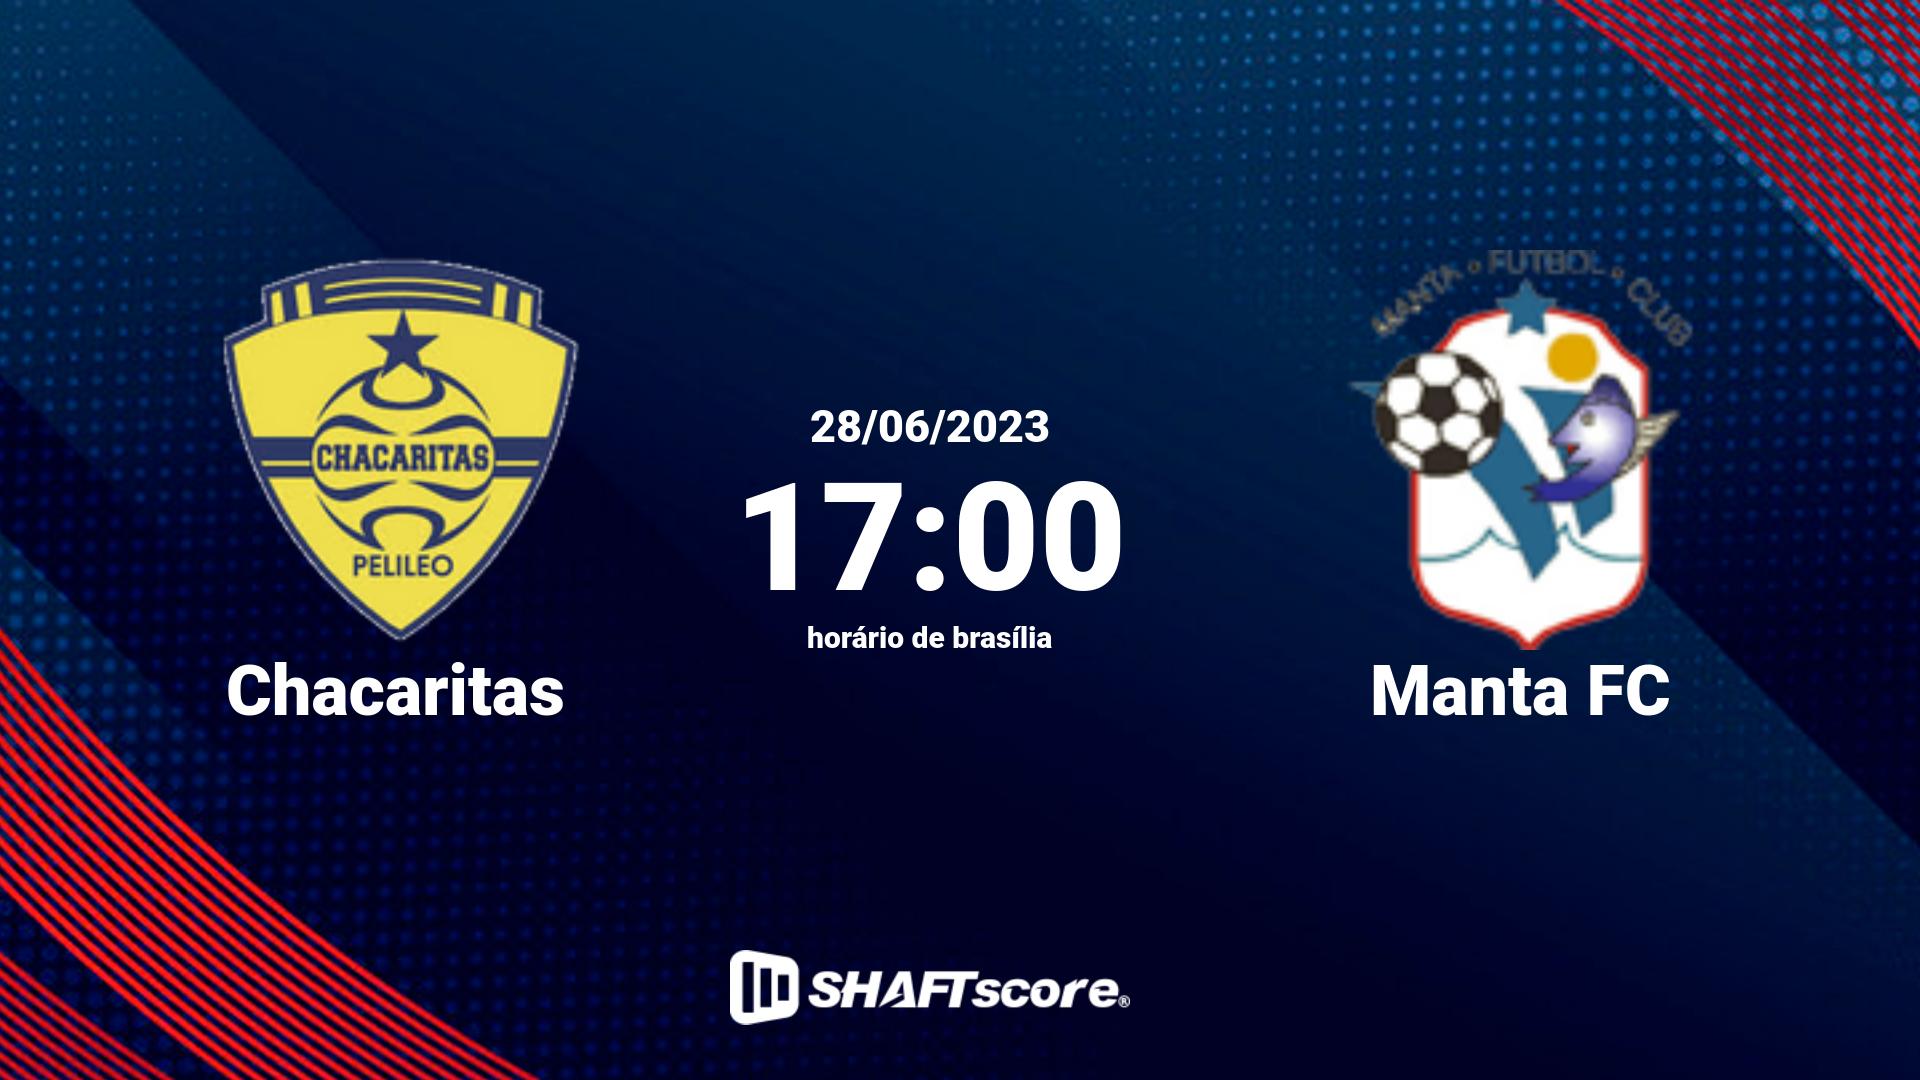 Estatísticas do jogo Chacaritas vs Manta FC 28.06 17:00